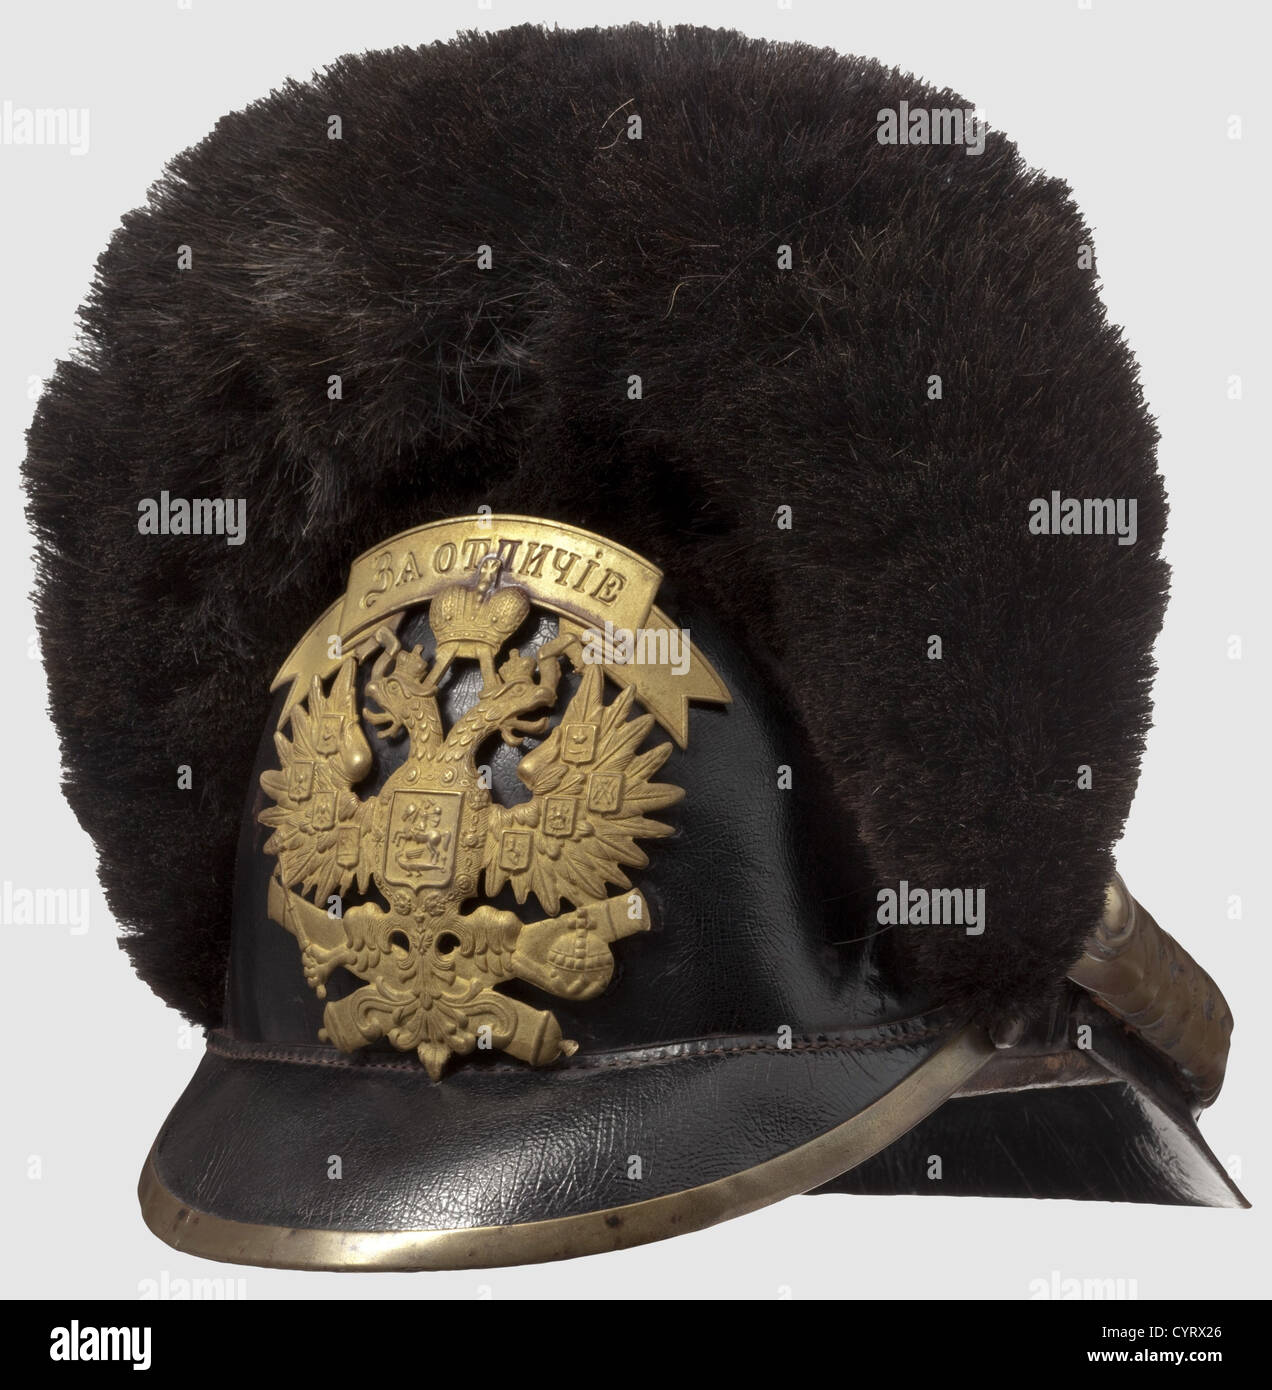 Ein russischer Helm für Männer der berittenen Artillerie, wie ab 1910 auf  Lederkörper getragen, Querbearhautnaht. Messing Wappen mit russischen  Doppel Adler, Bandeau(tr) "für Unterscheidung" in kyrillischen Buchstaben,  und zwei gekreuzte Kanonen darunter.